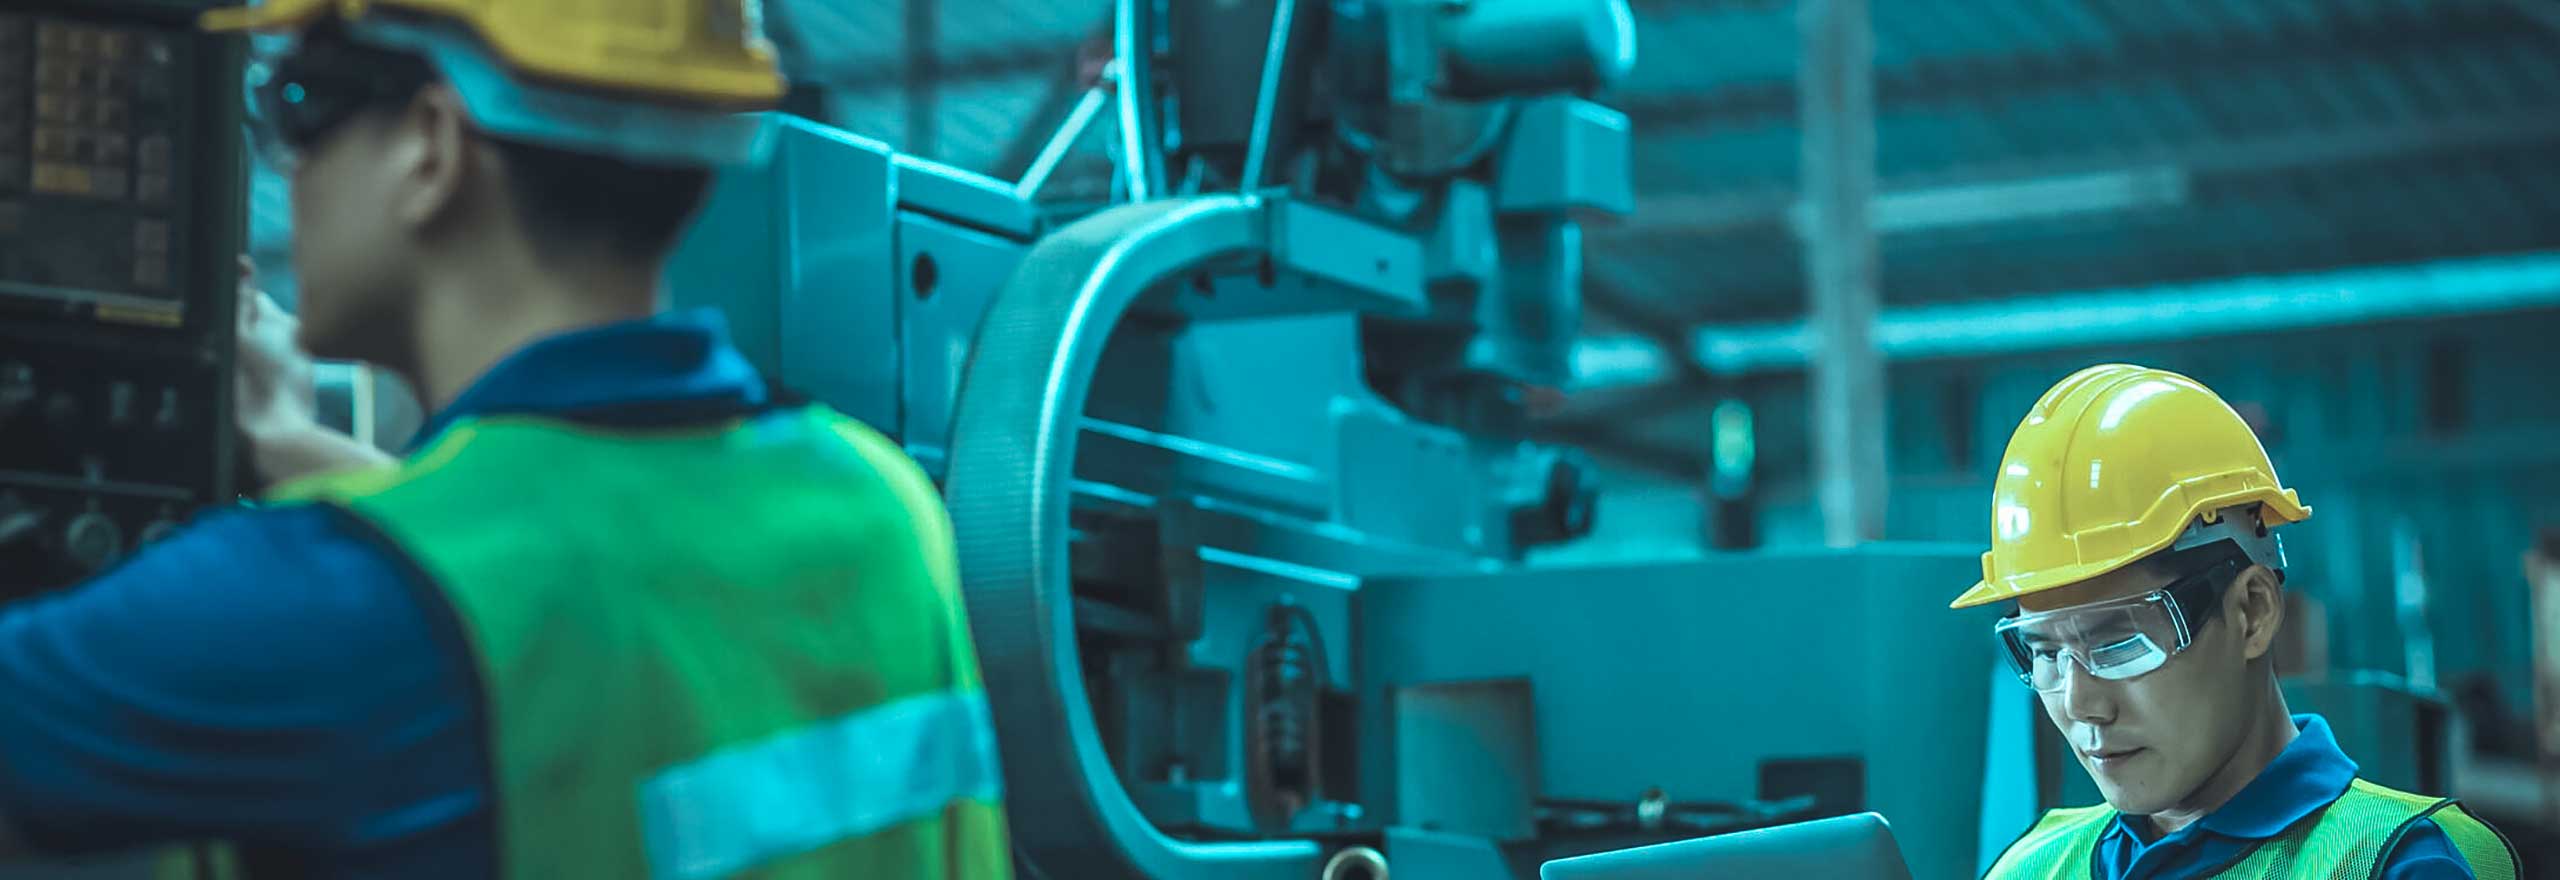 Ingegnere con elmetto e tablet che esamina i dati mentre un collega controlla la macchina in uno stabilimento industriale.